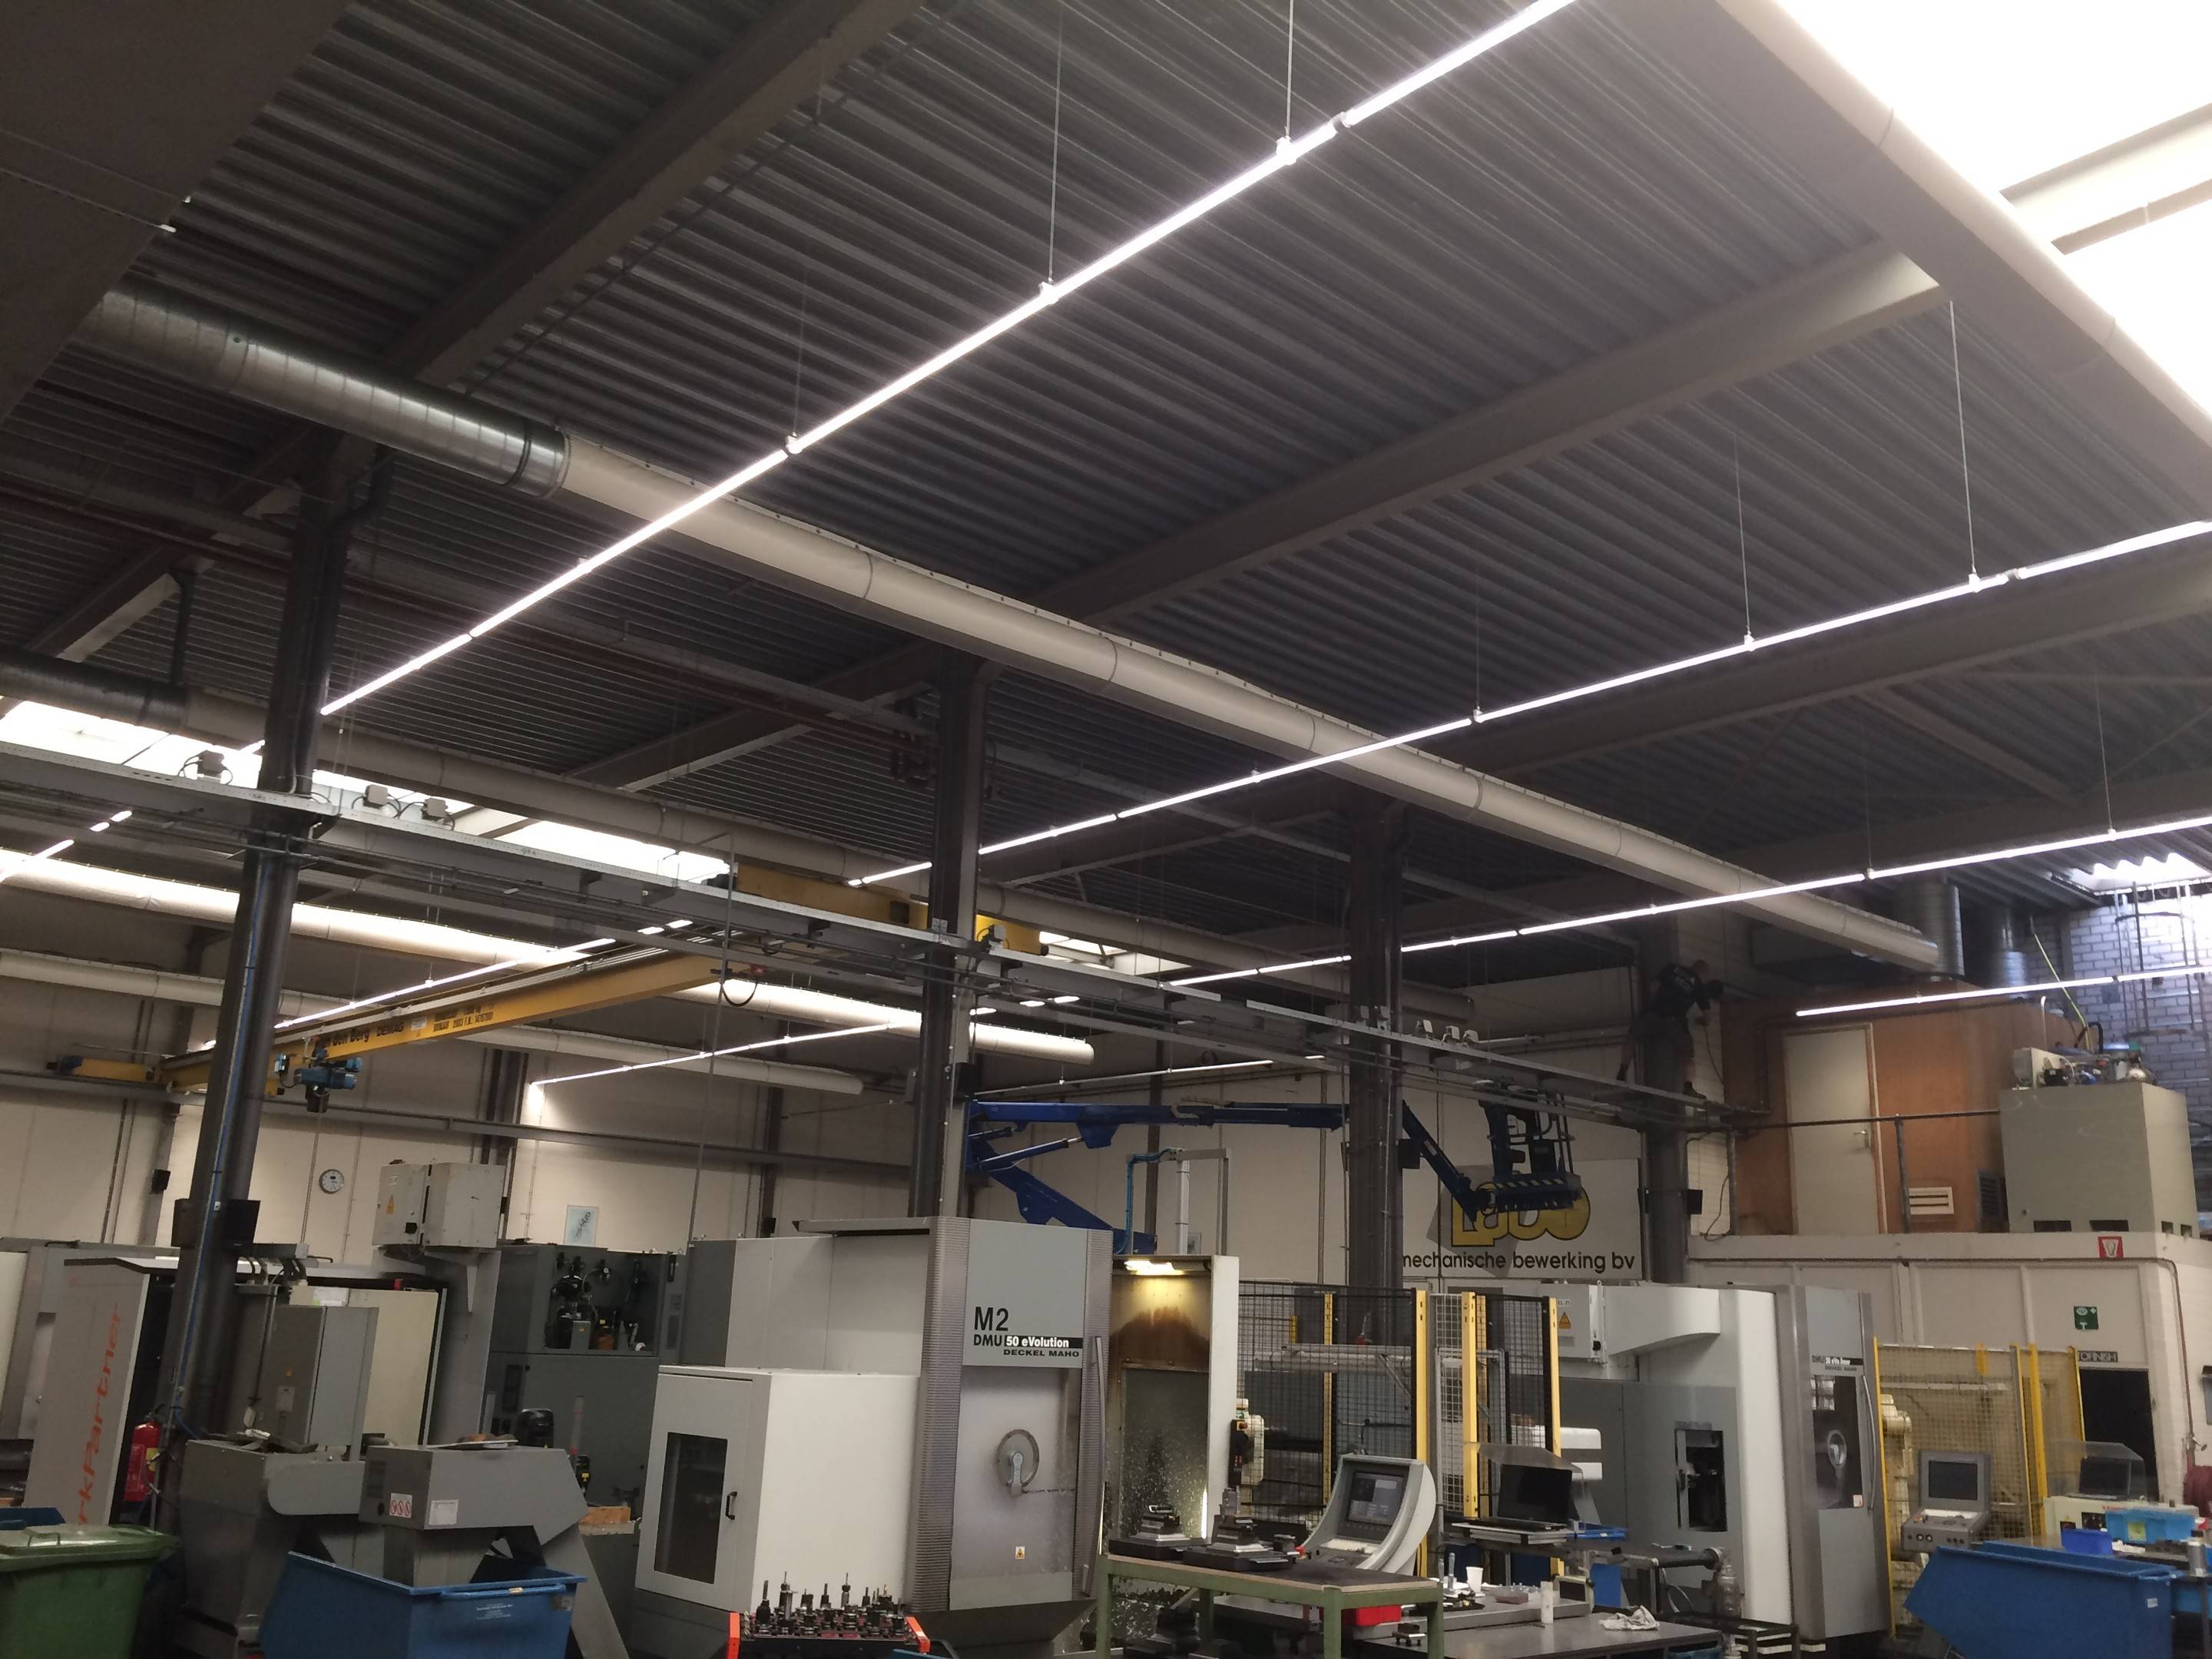 Case: moderne verlichting bedrijfshal helpt bij steeds preciezer werken